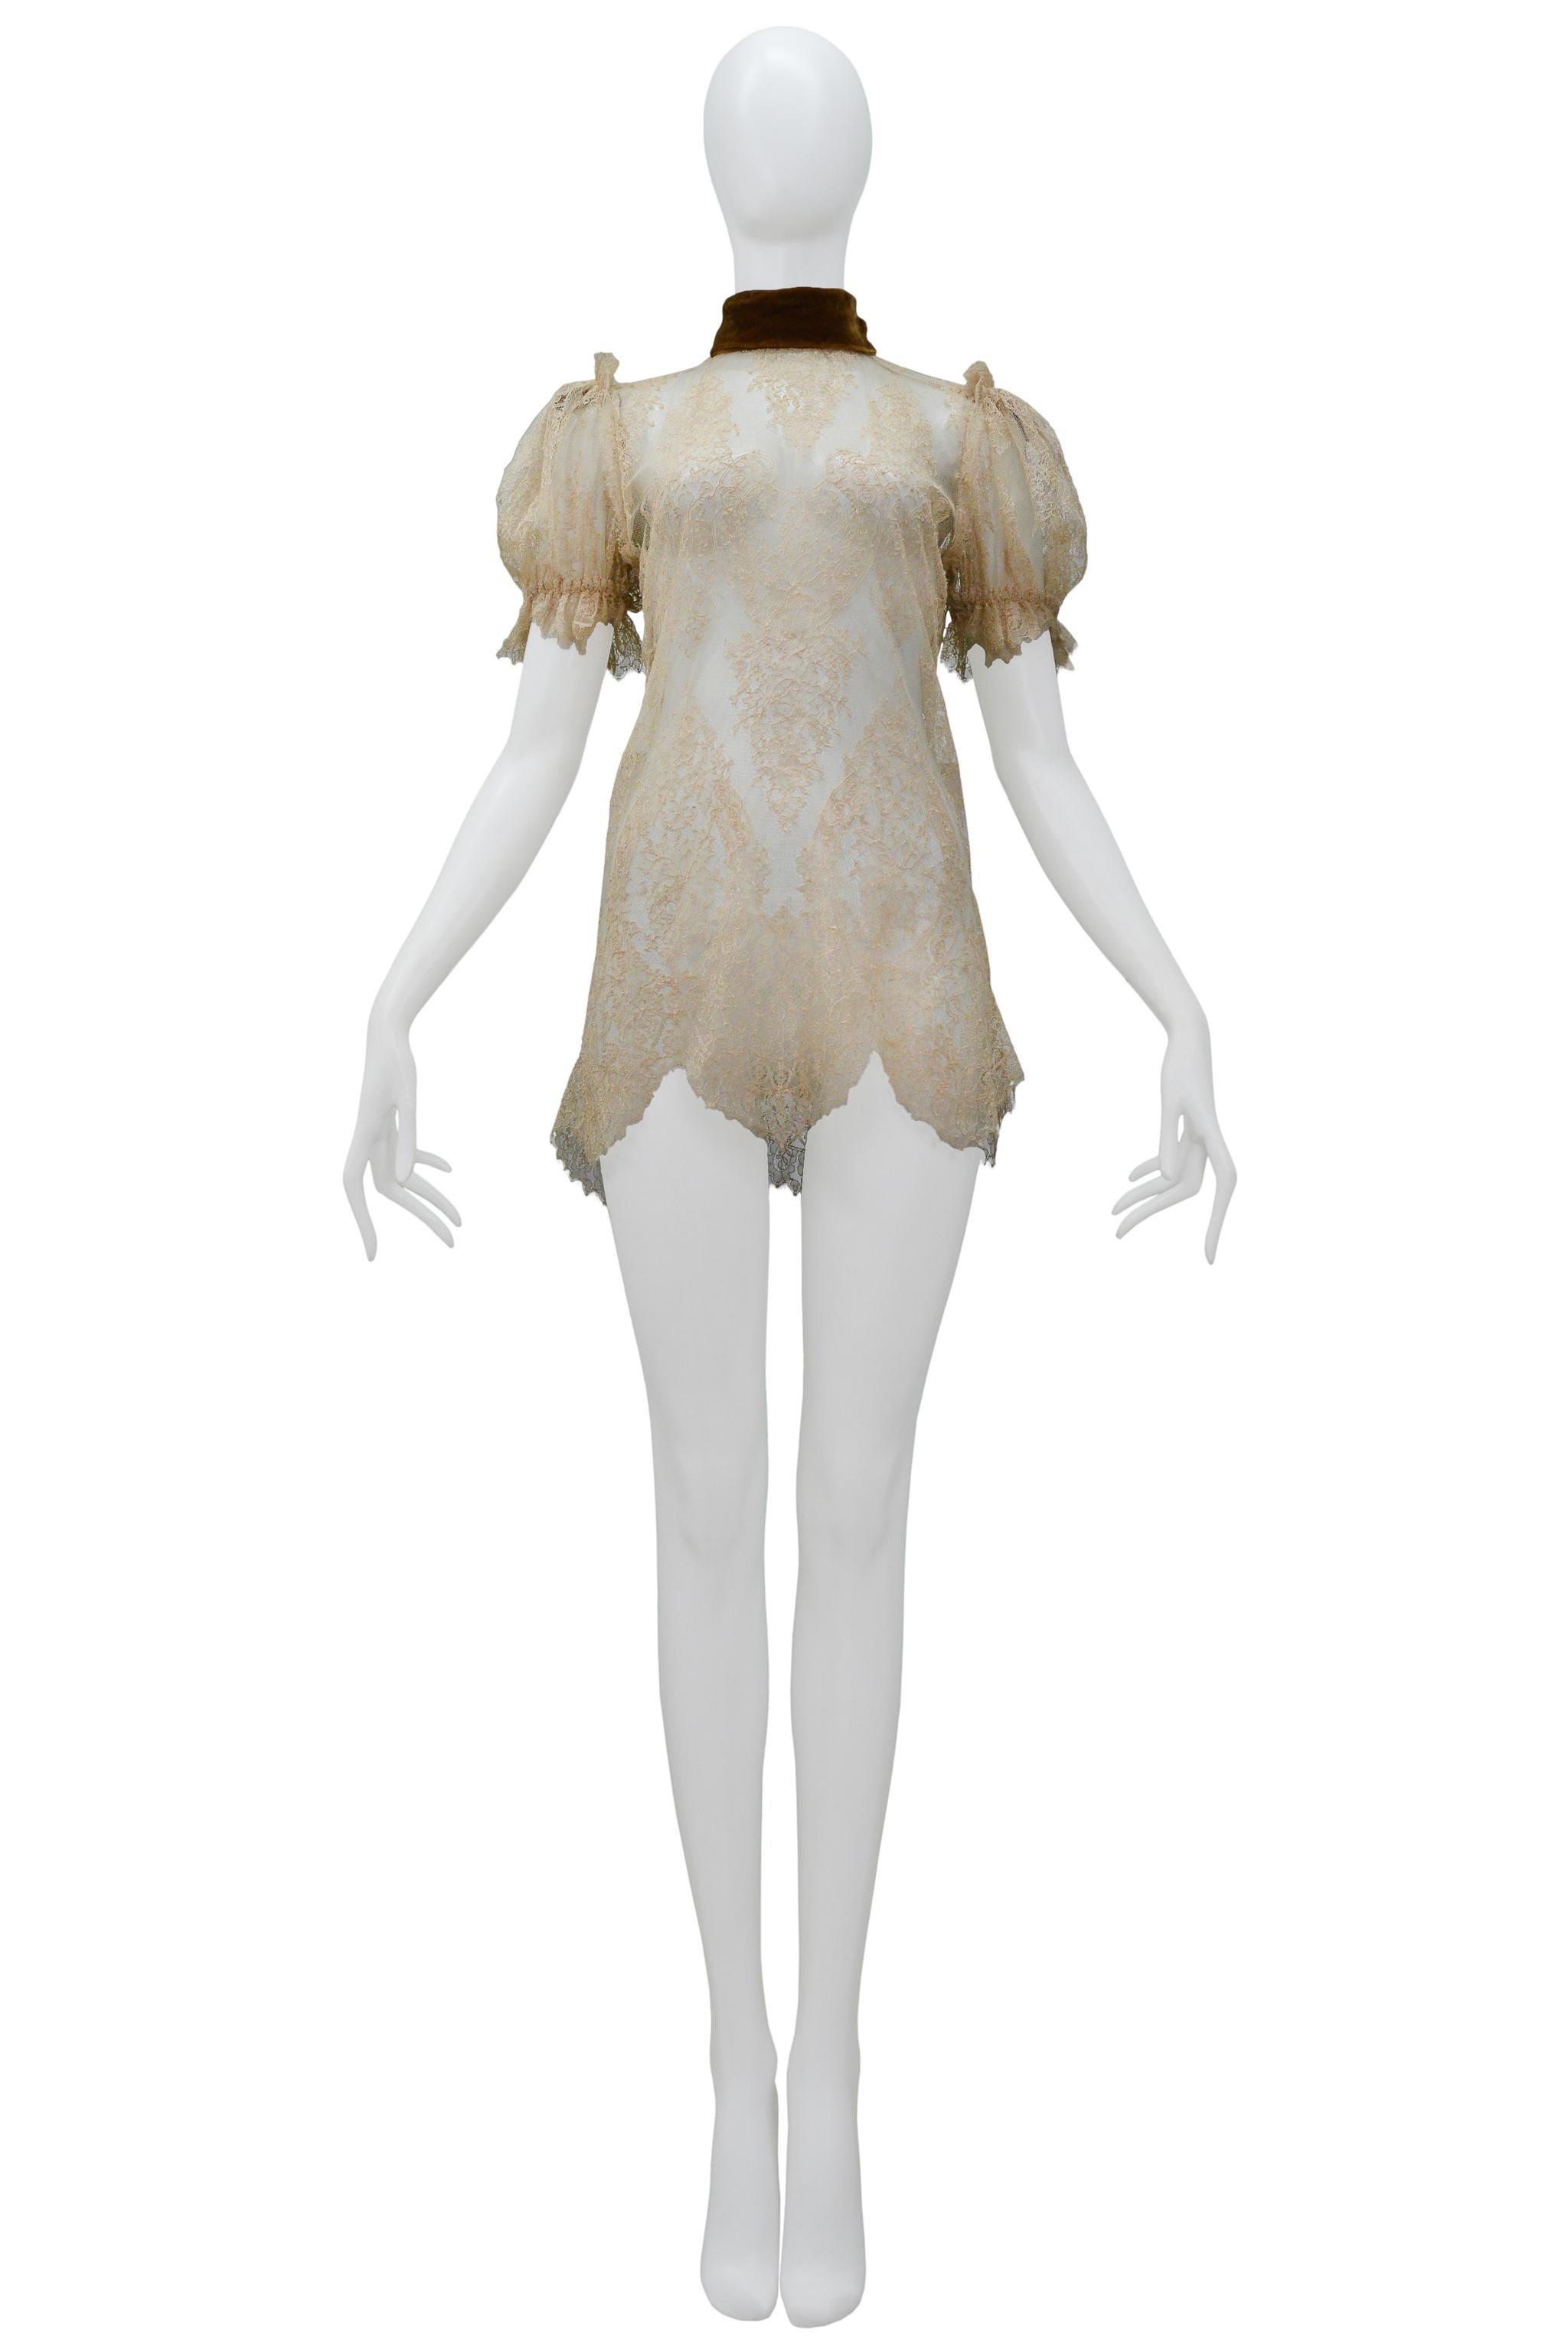 Resurrection Vintage a le plaisir de vous proposer une mini robe vintage Dolce & Gabbana en dentelle blanc cassé avec des manches courtes bouffantes, un col marron cuivré et une fermeture éclair dans le dos.

Dolce & Gabbana
Dentelle
38
CIRCA -